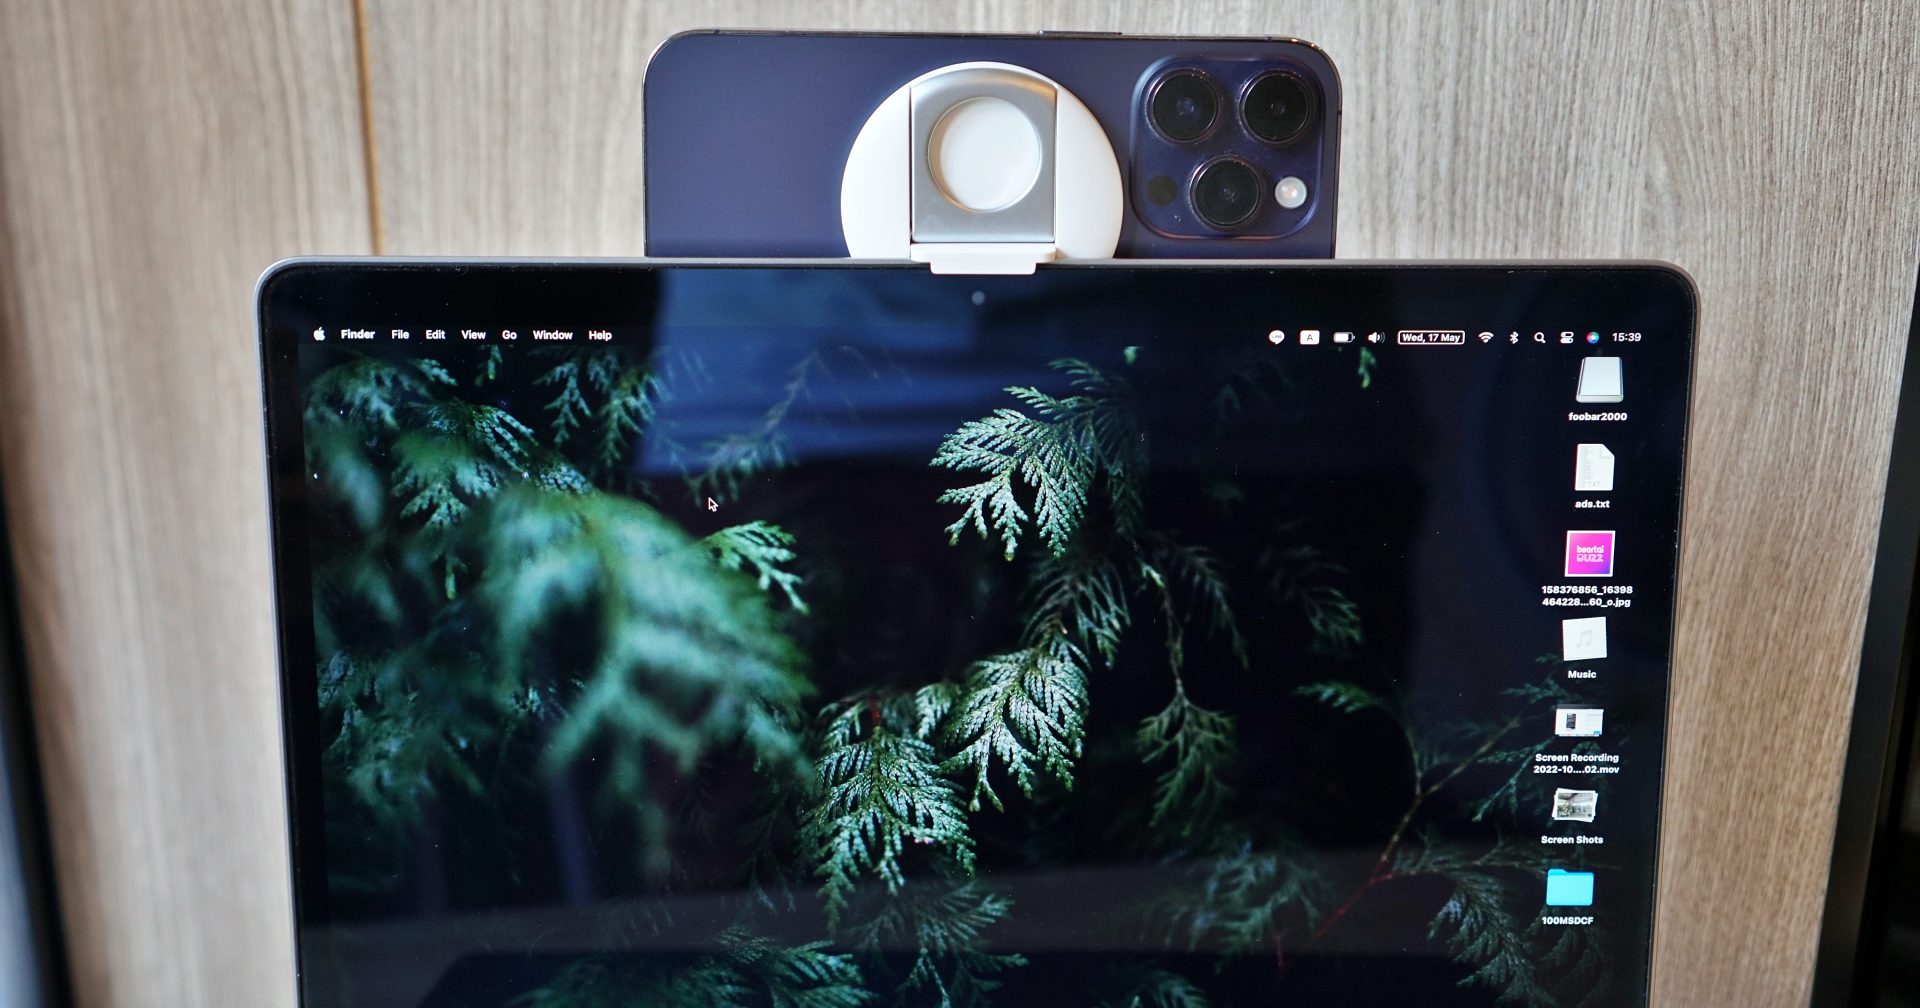 รีวิว Belkin iPhone Mount with MagSafe อุปกรณ์เสริมให้ใช้ไอโฟนเป็น Webcam กับแมคได้!